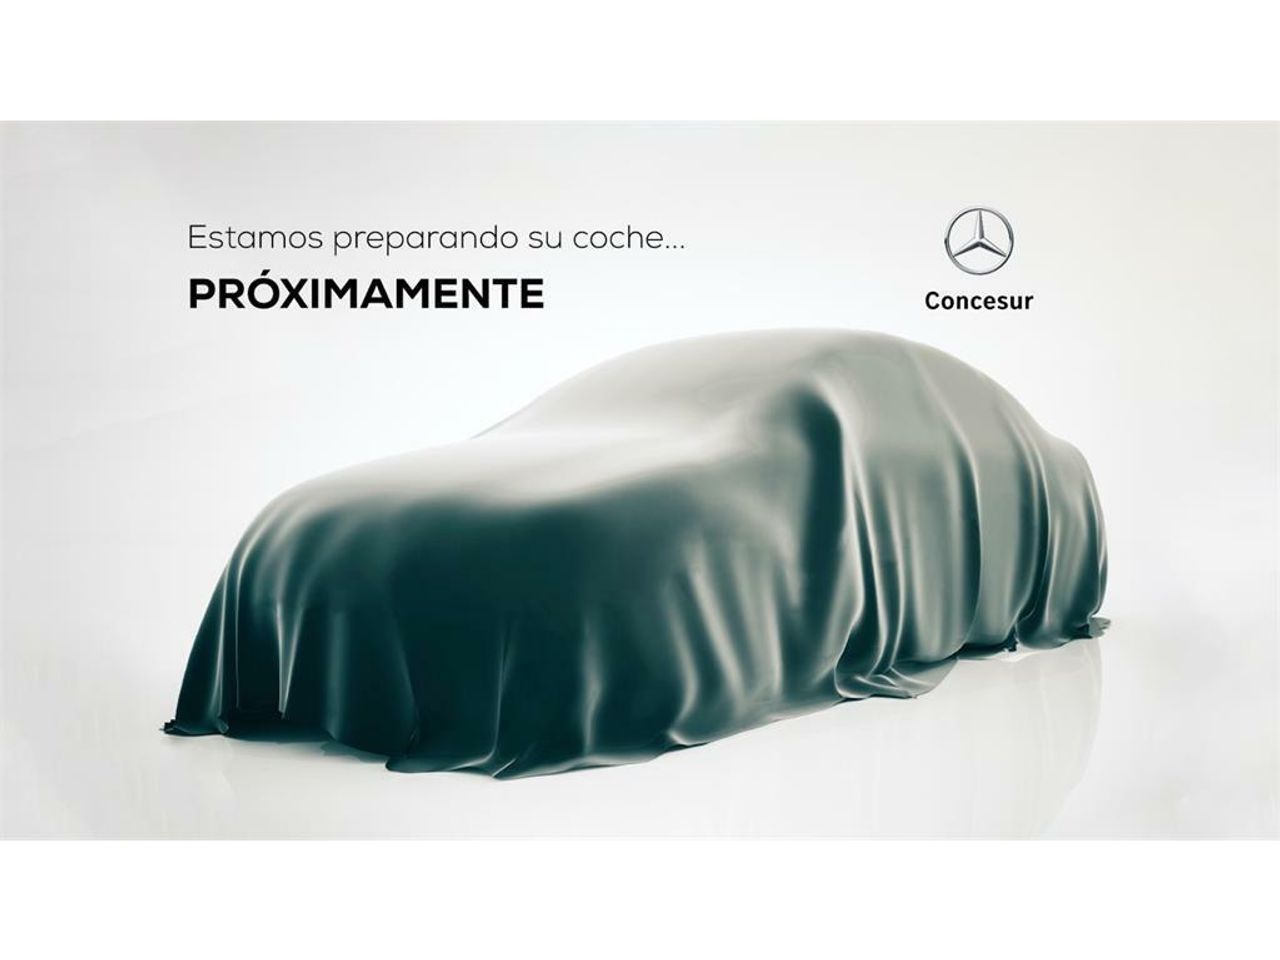 Foto Mercedes-Benz Clase CLA 3